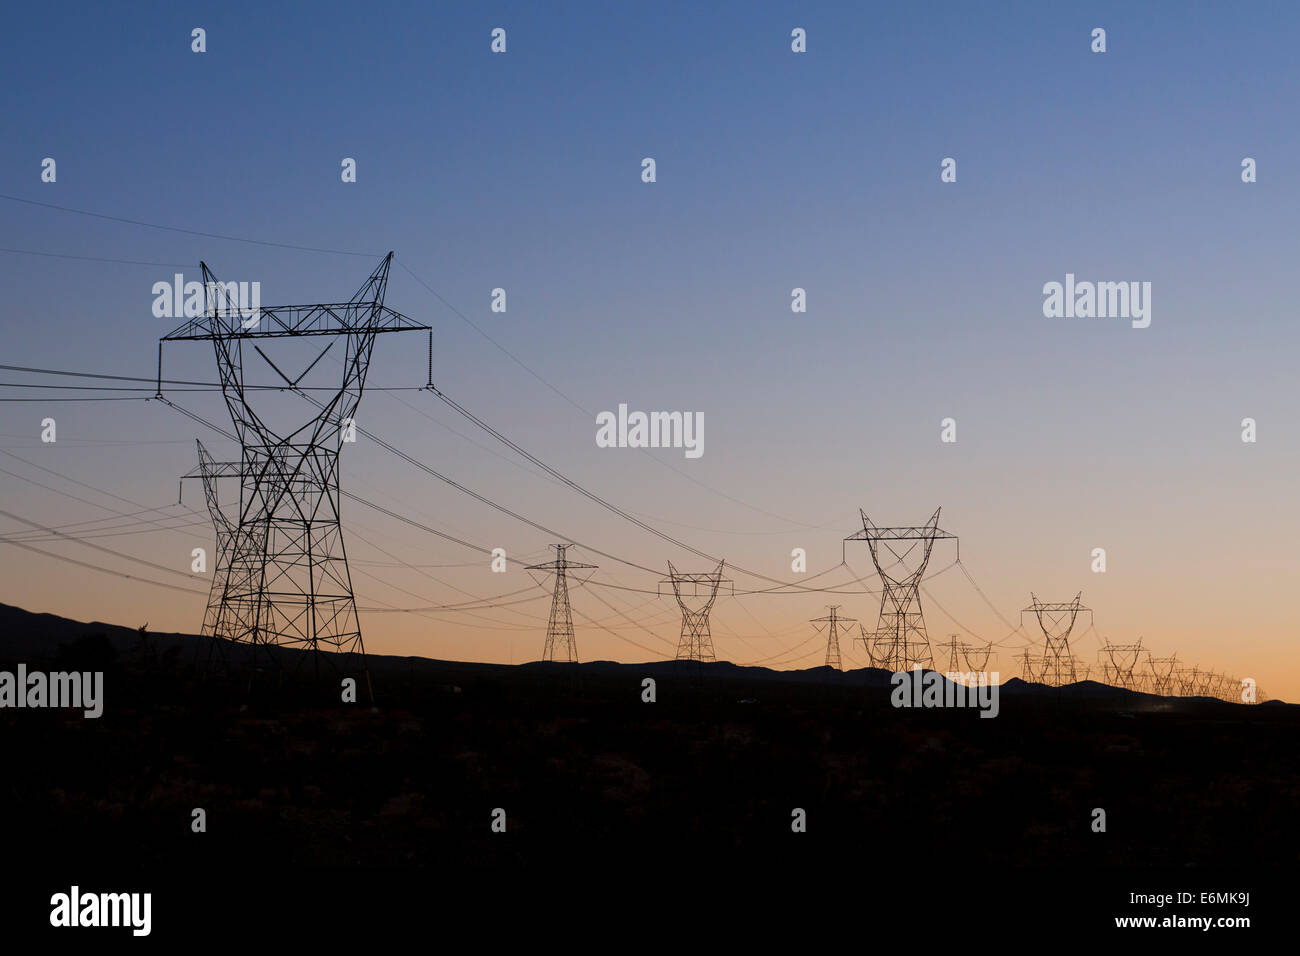 Les tours de transmission d'électricité (pylônes électriques) - California USA Banque D'Images